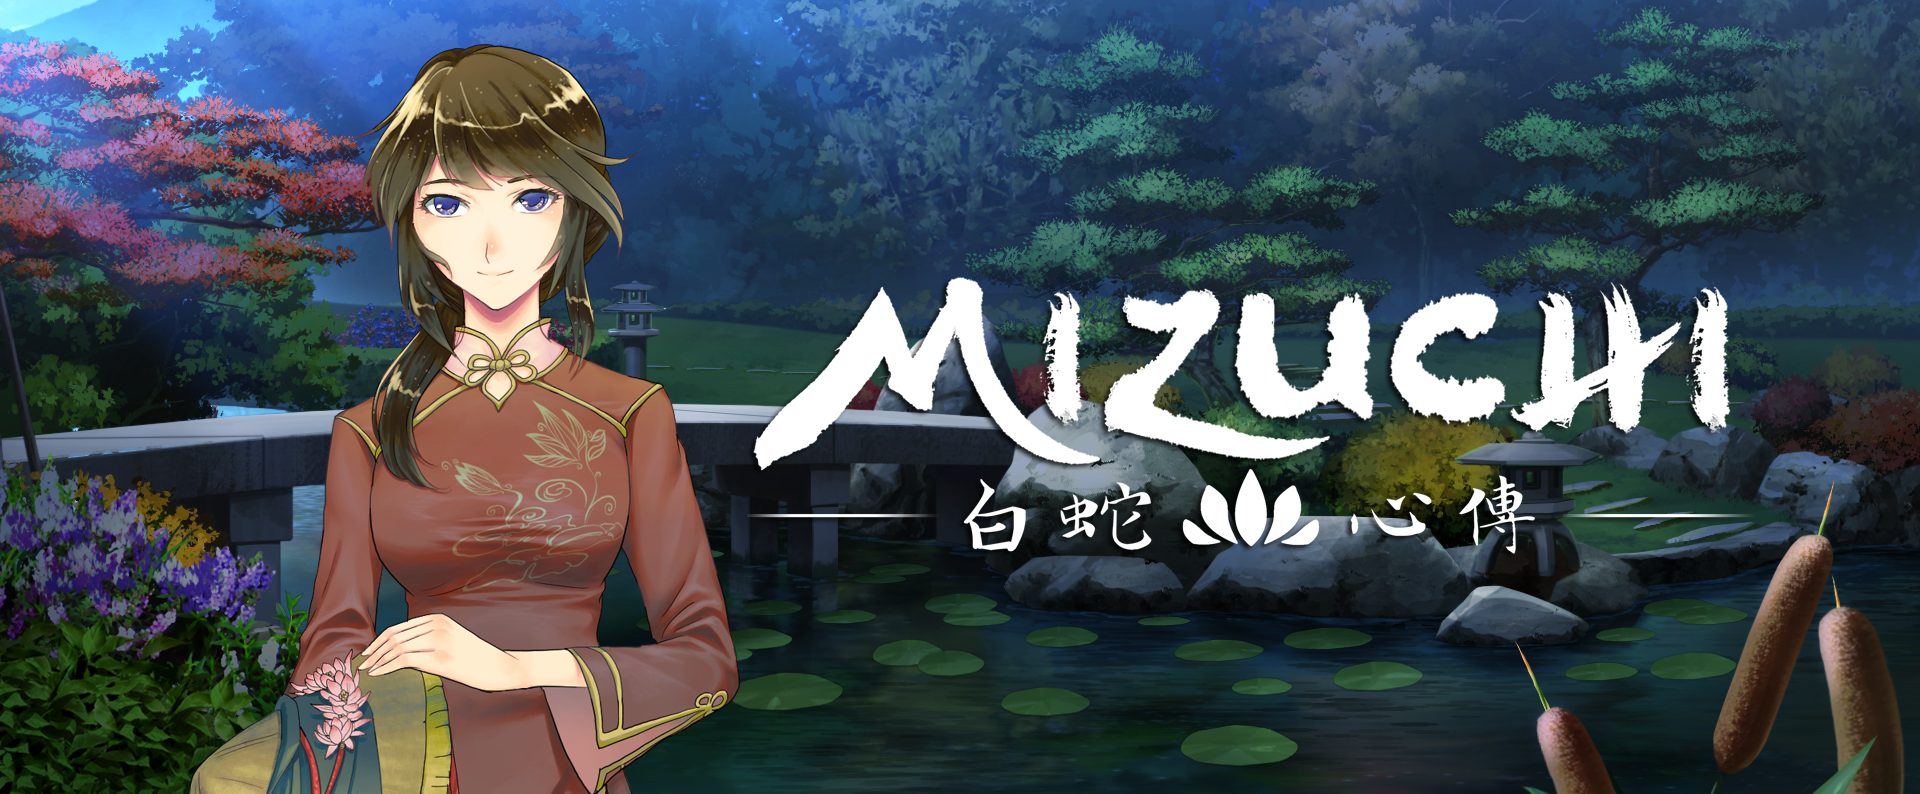 Mizuchi Game Review – Slow Burn Yuri Romance